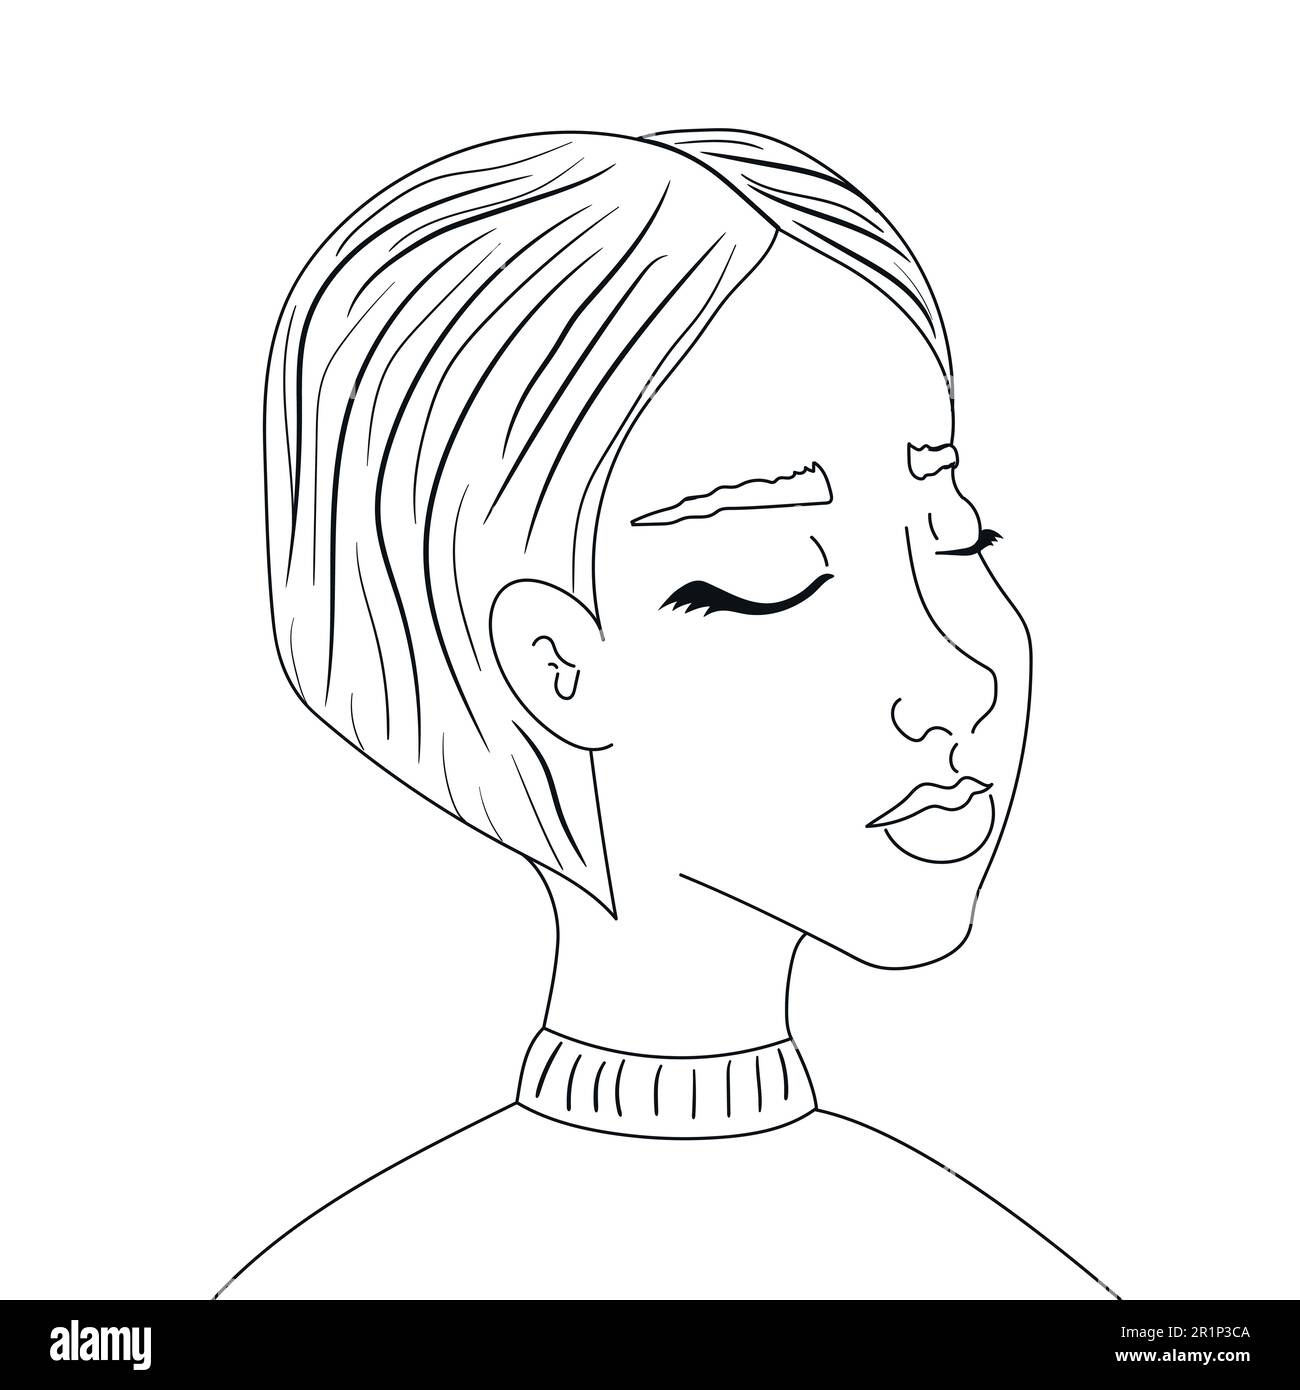 Ritratto disegnato a mano di una ragazza con occhi chiusi su sfondo bianco. Grafica vettoriale Illustrazione Vettoriale